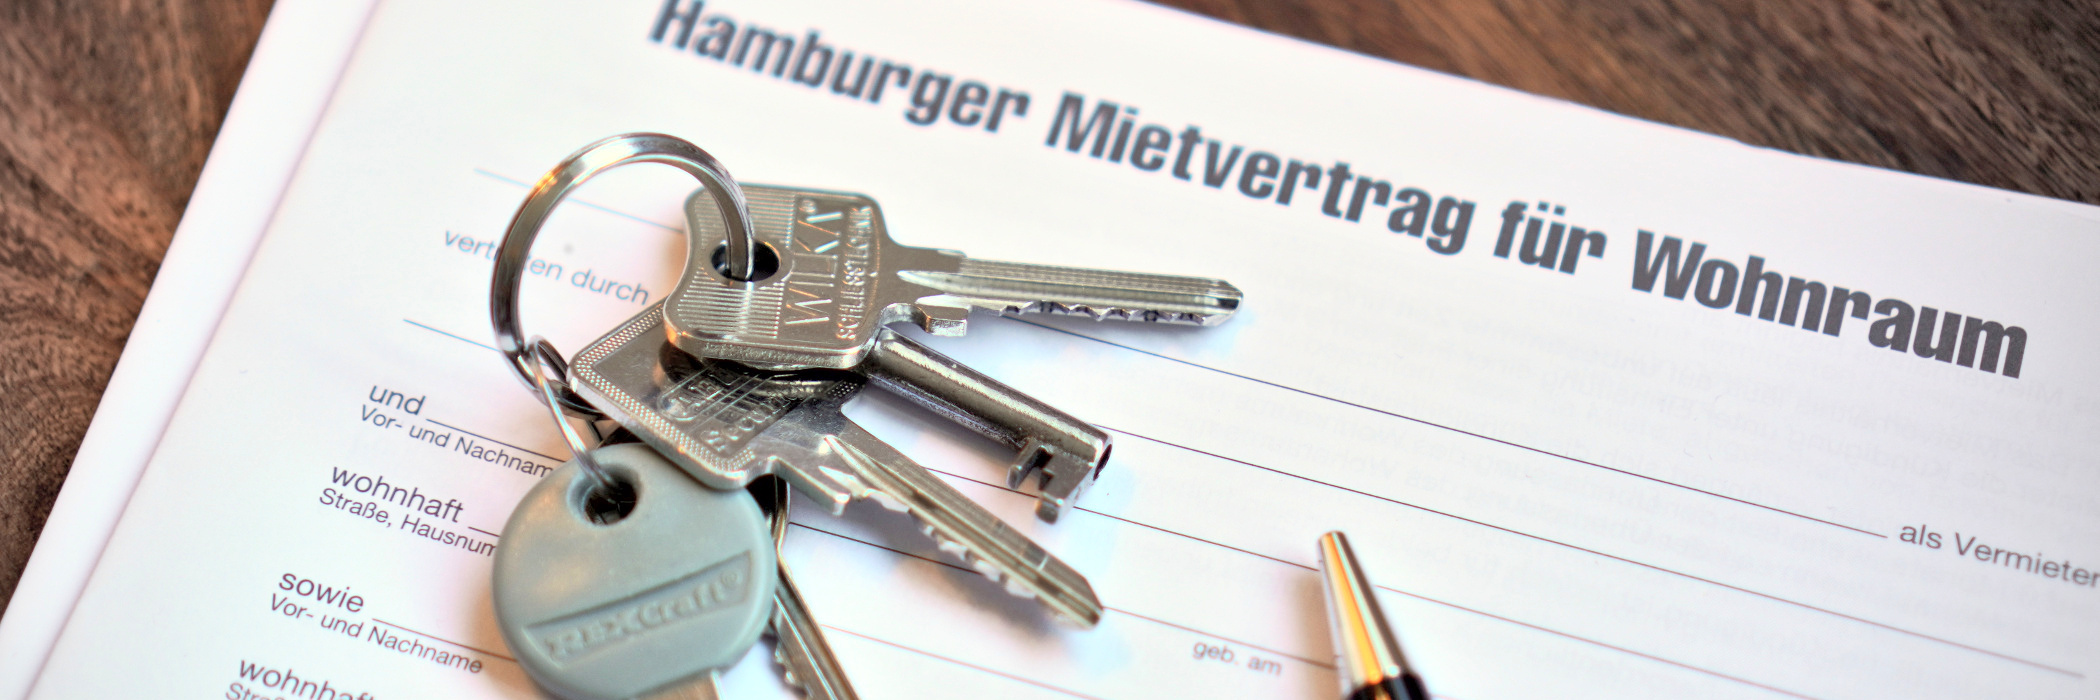 Hamburger Mietvertrag mit Schlüssel und Kugelschreiber